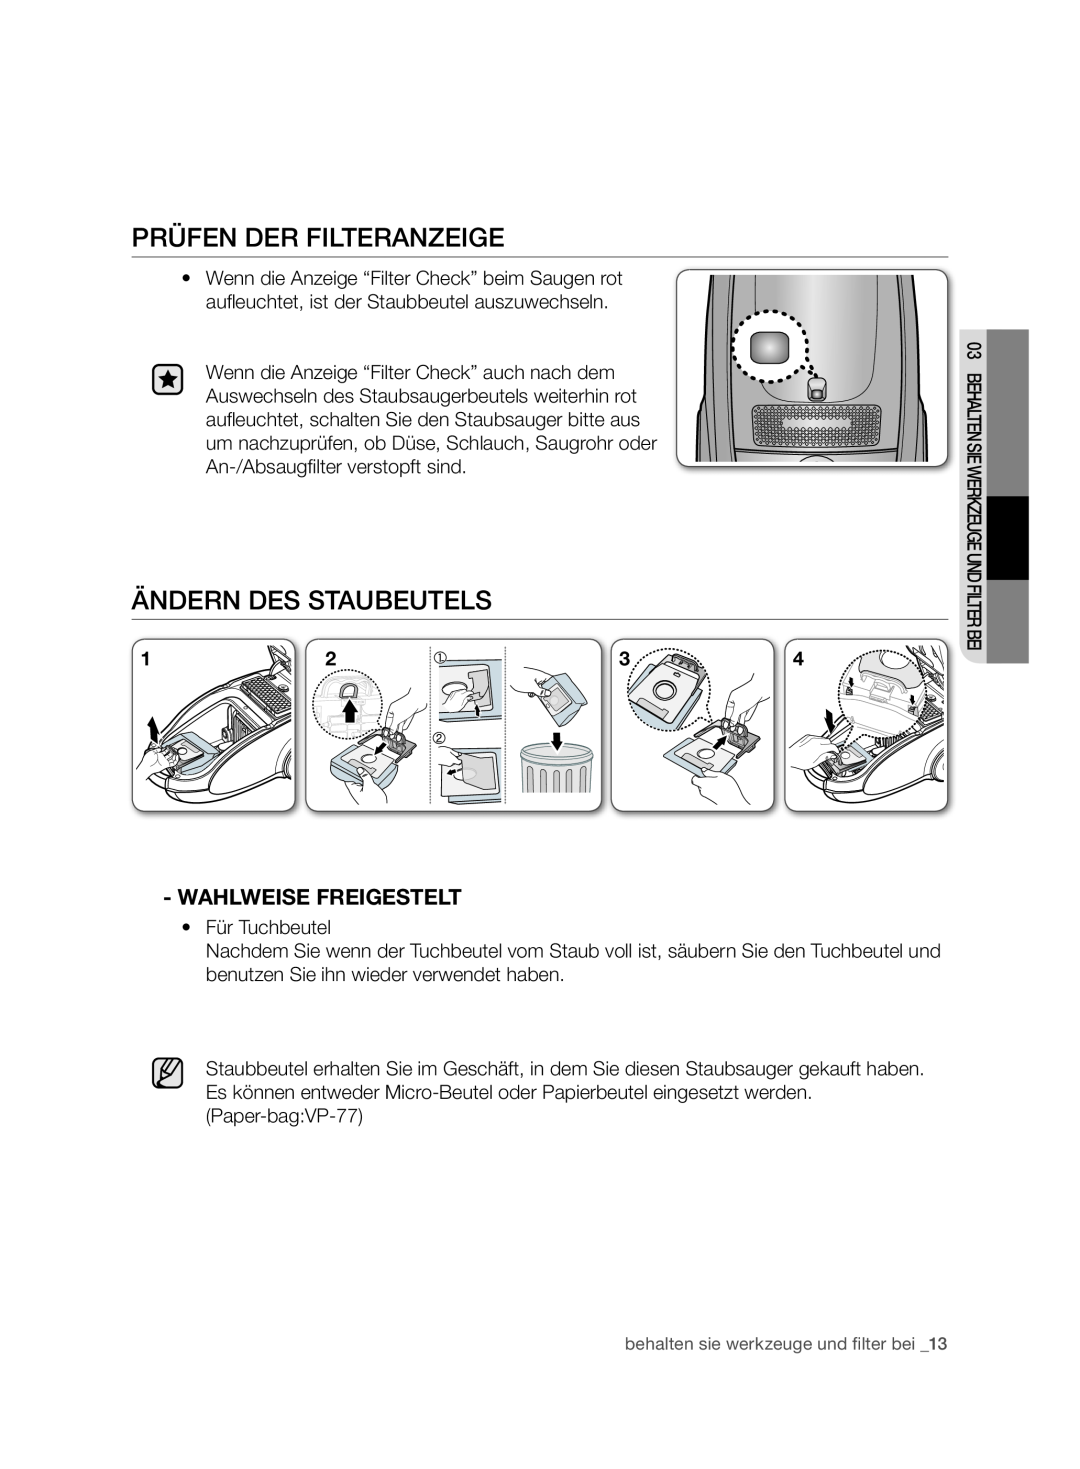 Samsung VCC7480V3R/XEG, VCC7480V3R/XEH manual Prüfen Der Filteranzeige, ändern des Staubeutels, Wahlweise Freigestelt 